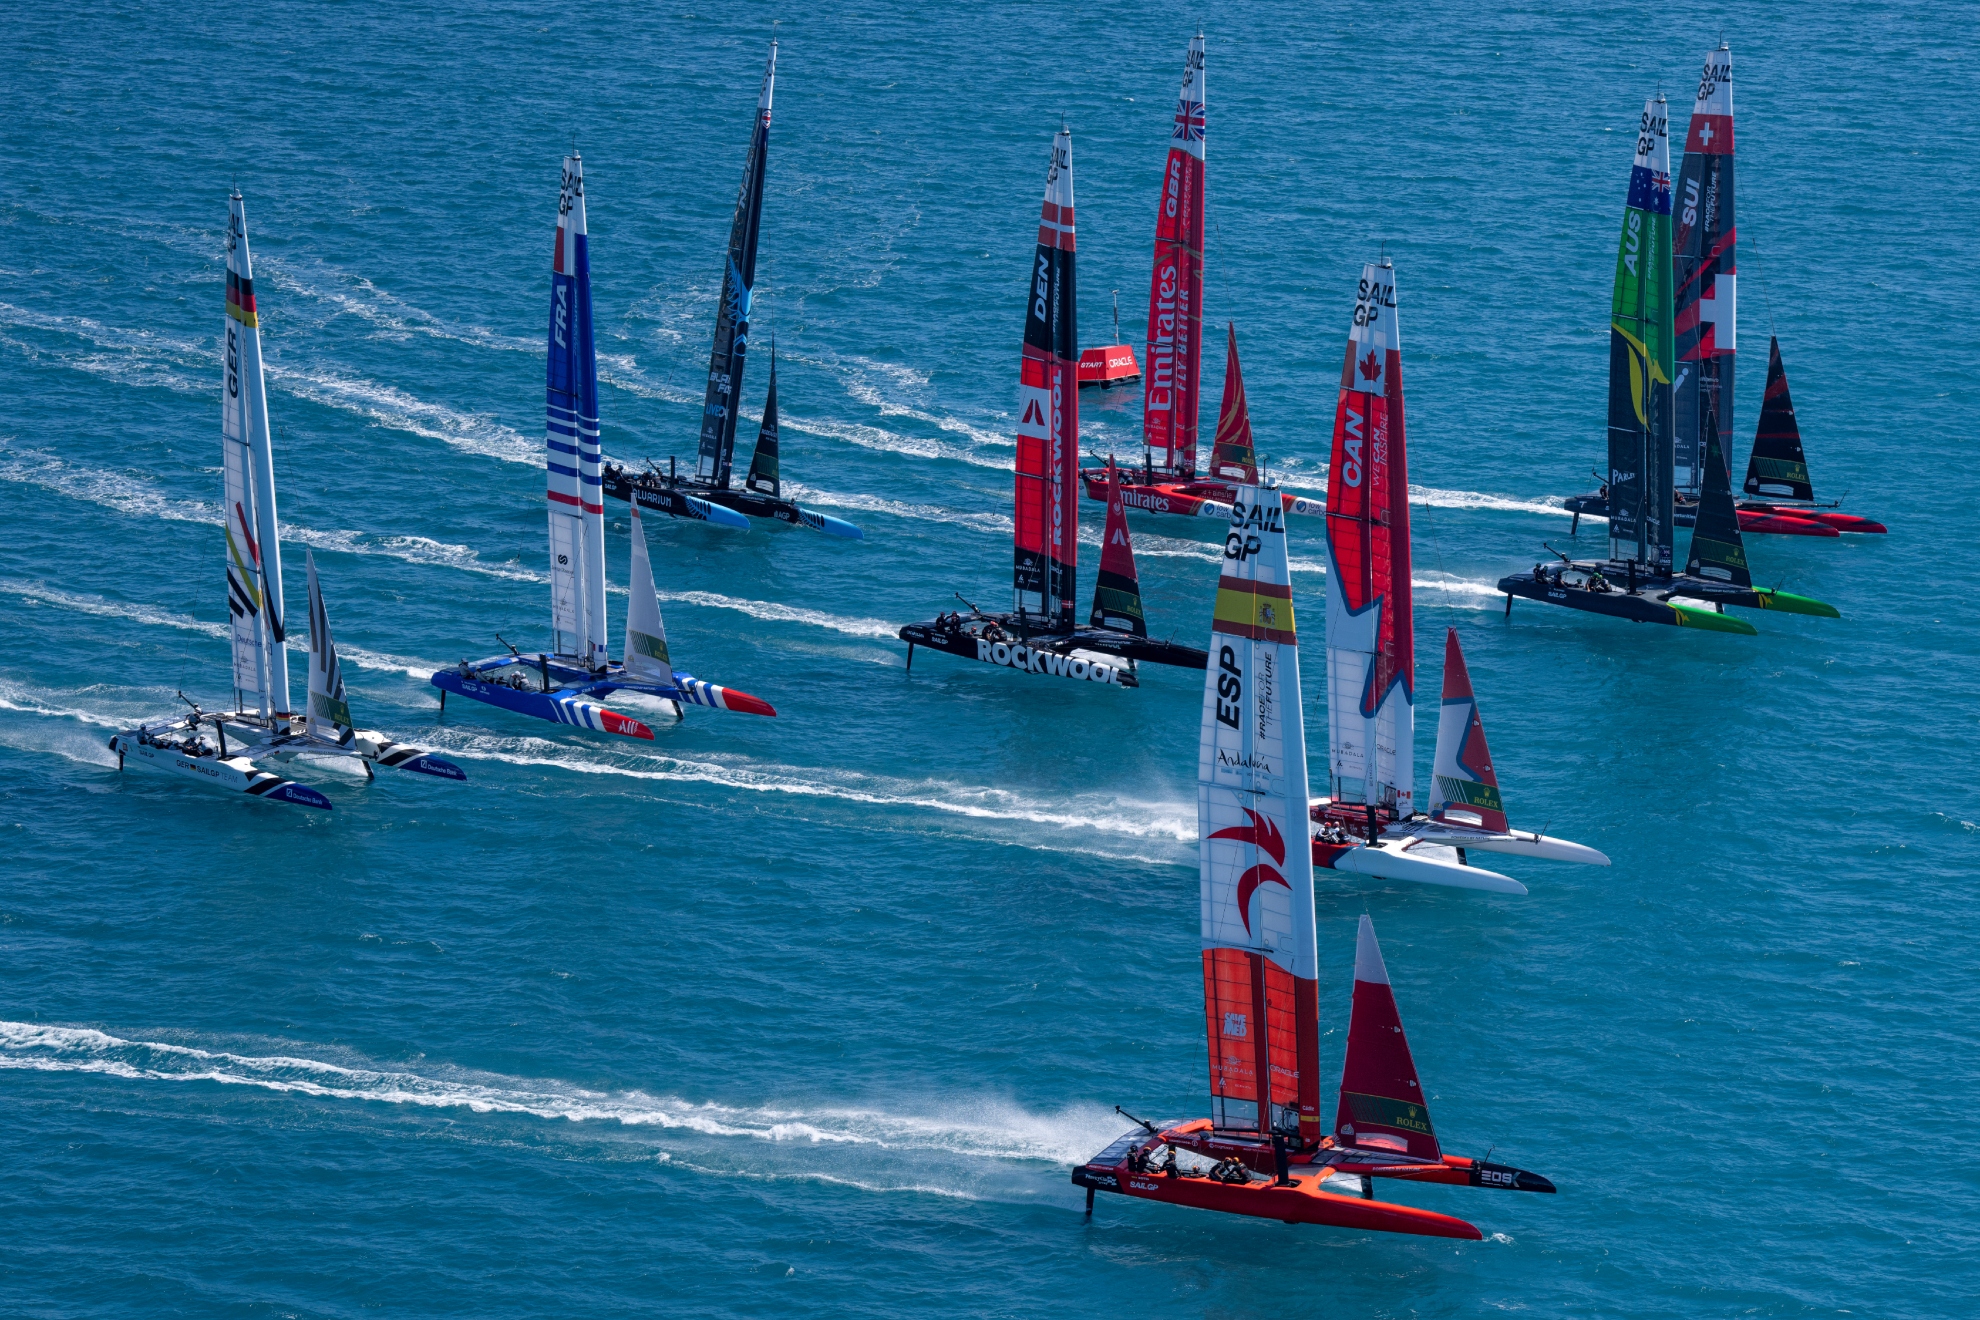 España, al frente de la flota de SailGP en el Gran Premio de Bermudas